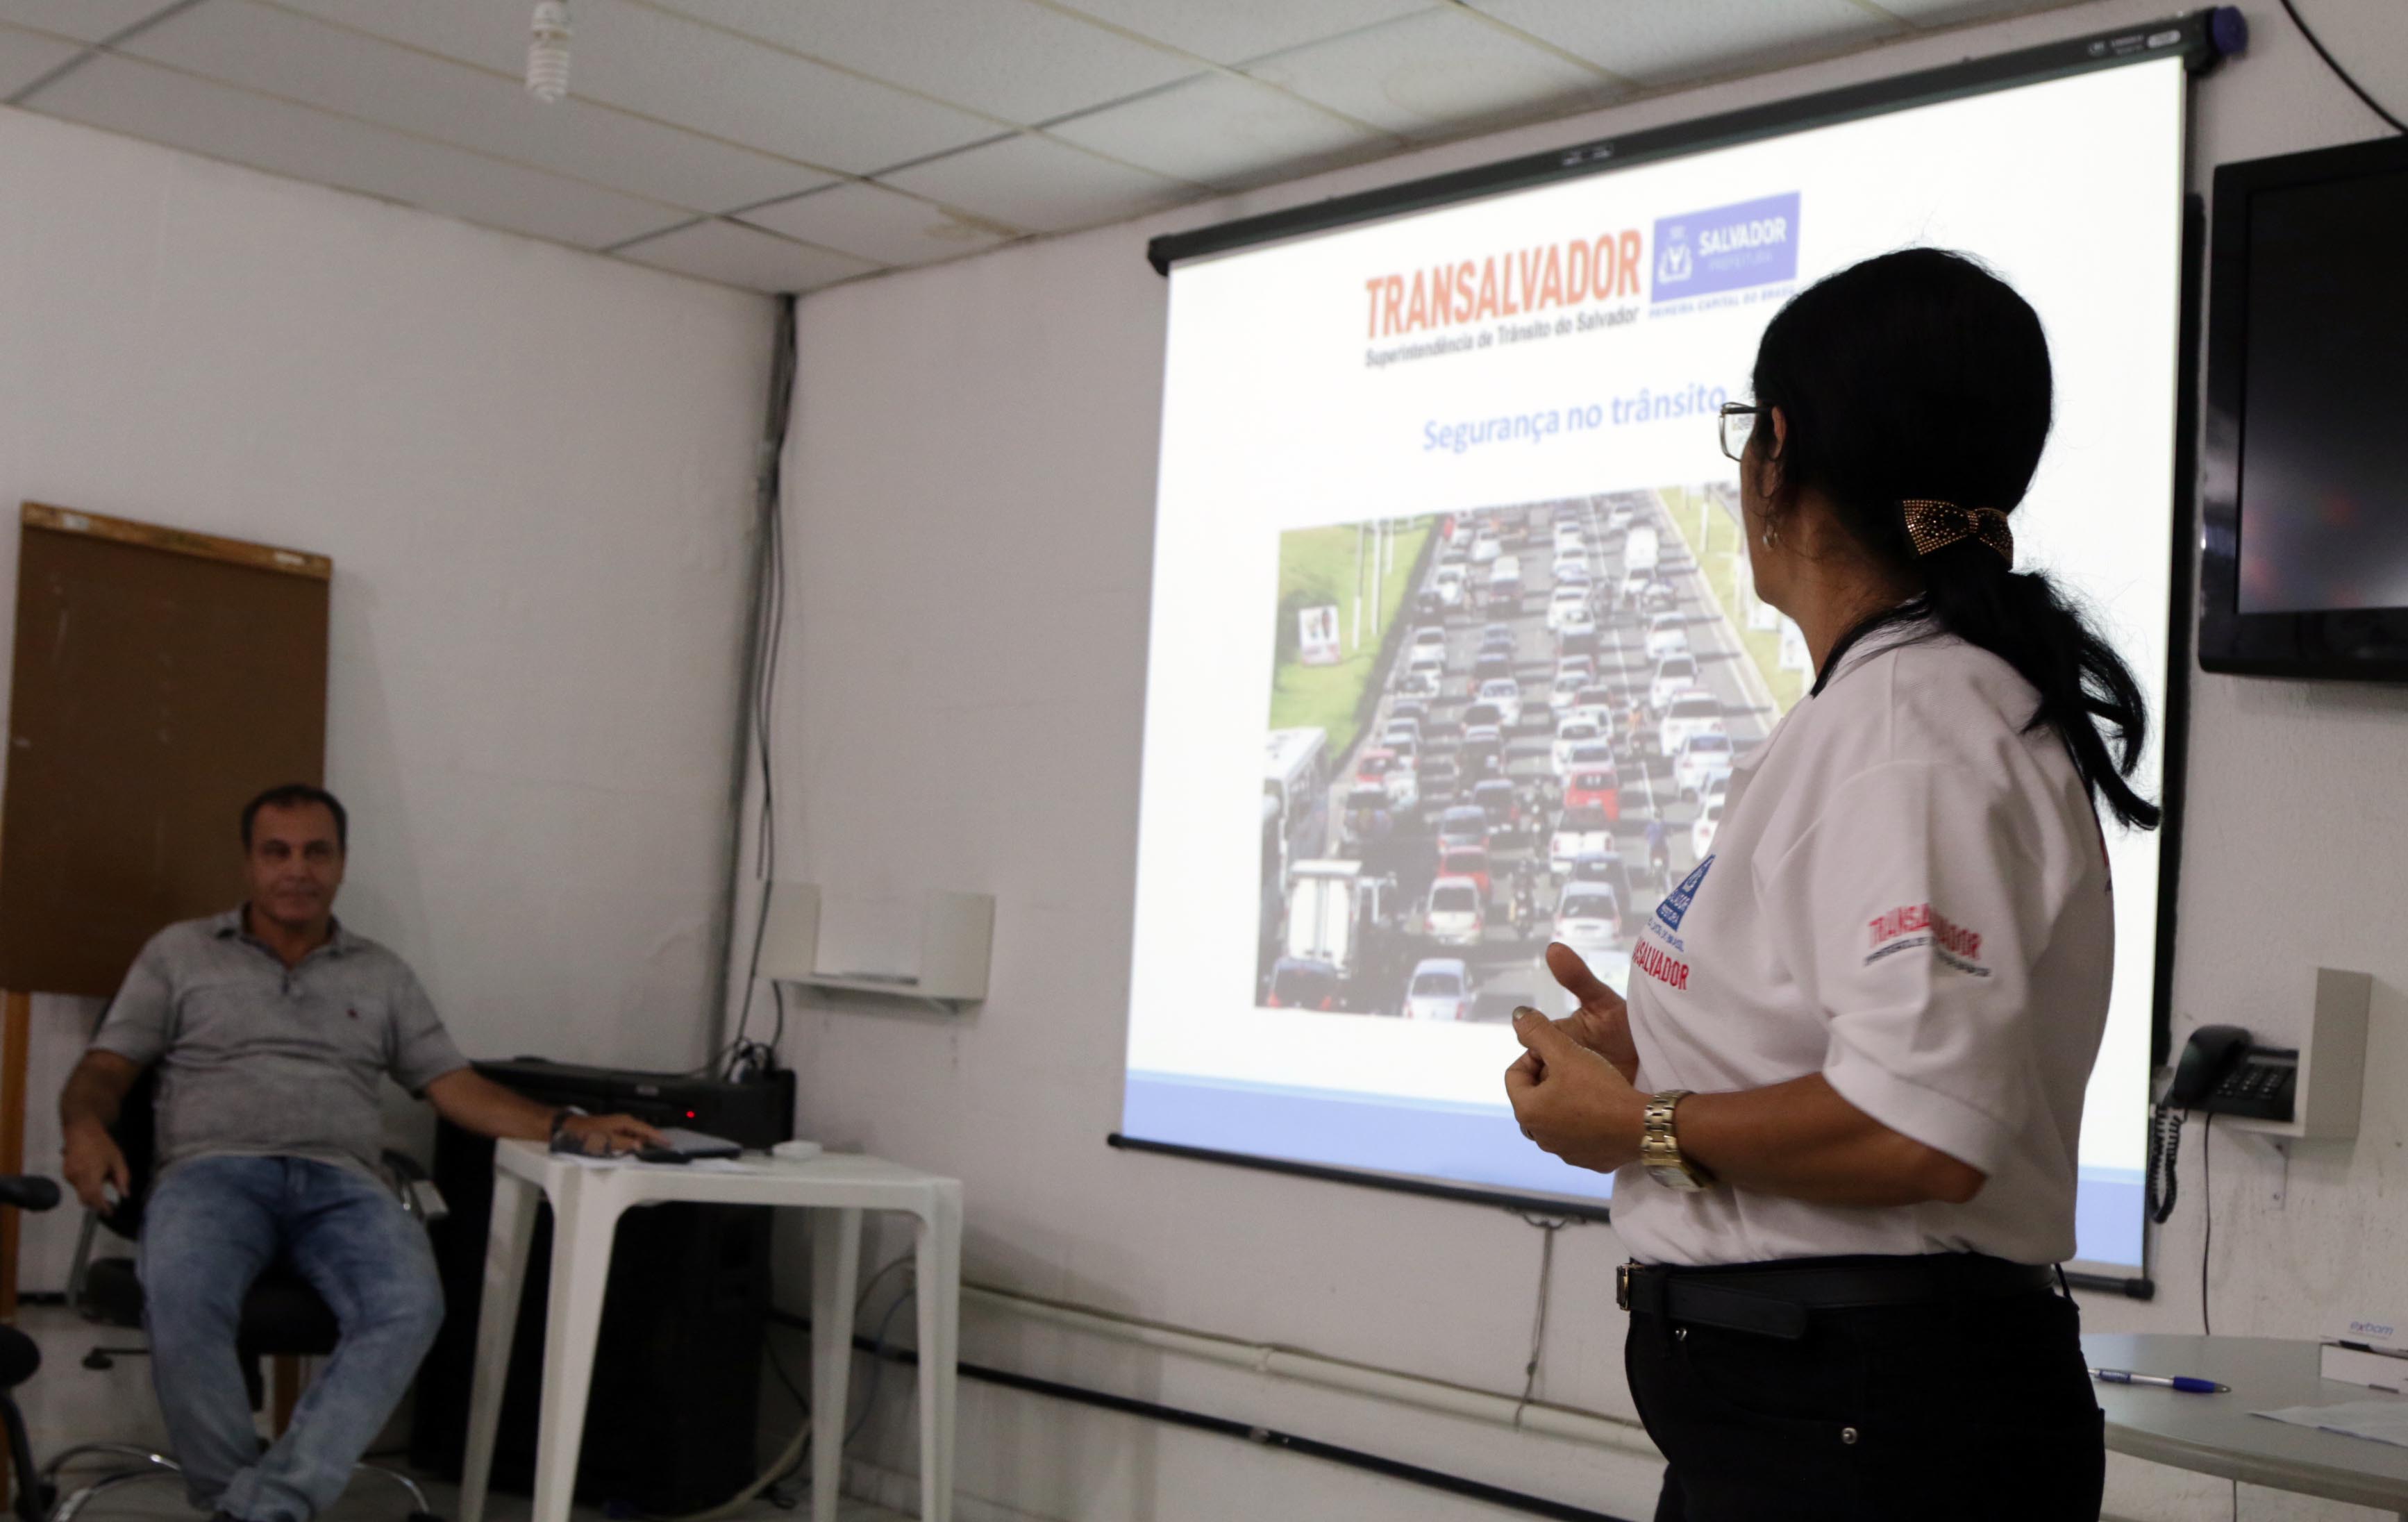 Salvador reduz mortes por acidentes de trânsito